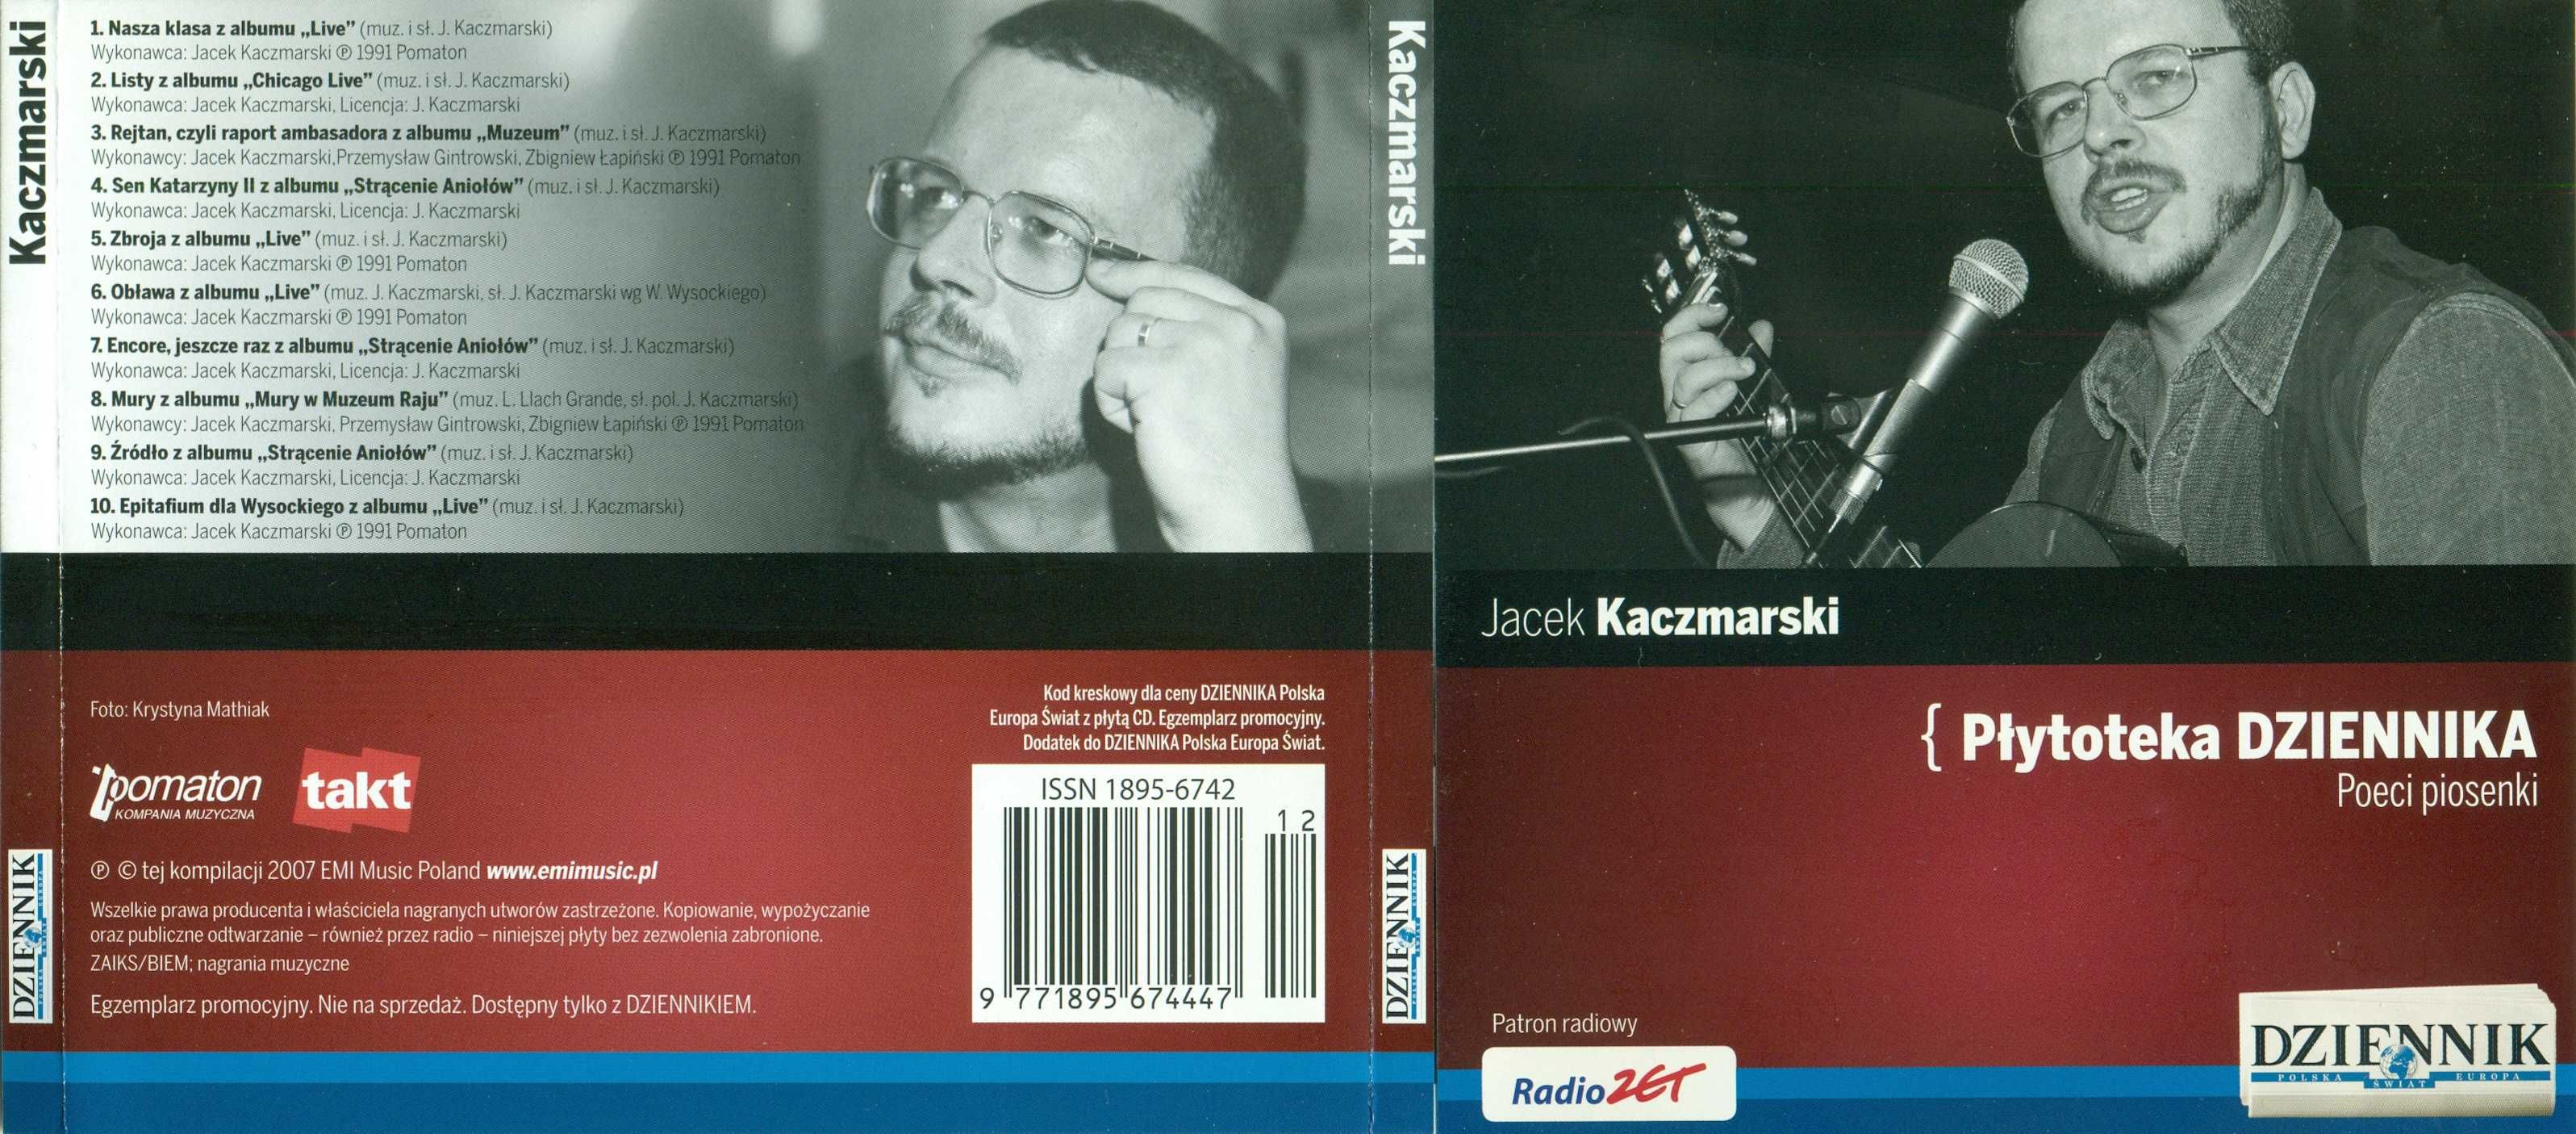 Jacek Kaczmarski kompilacja utworów Płytoteka Dziennika 2007